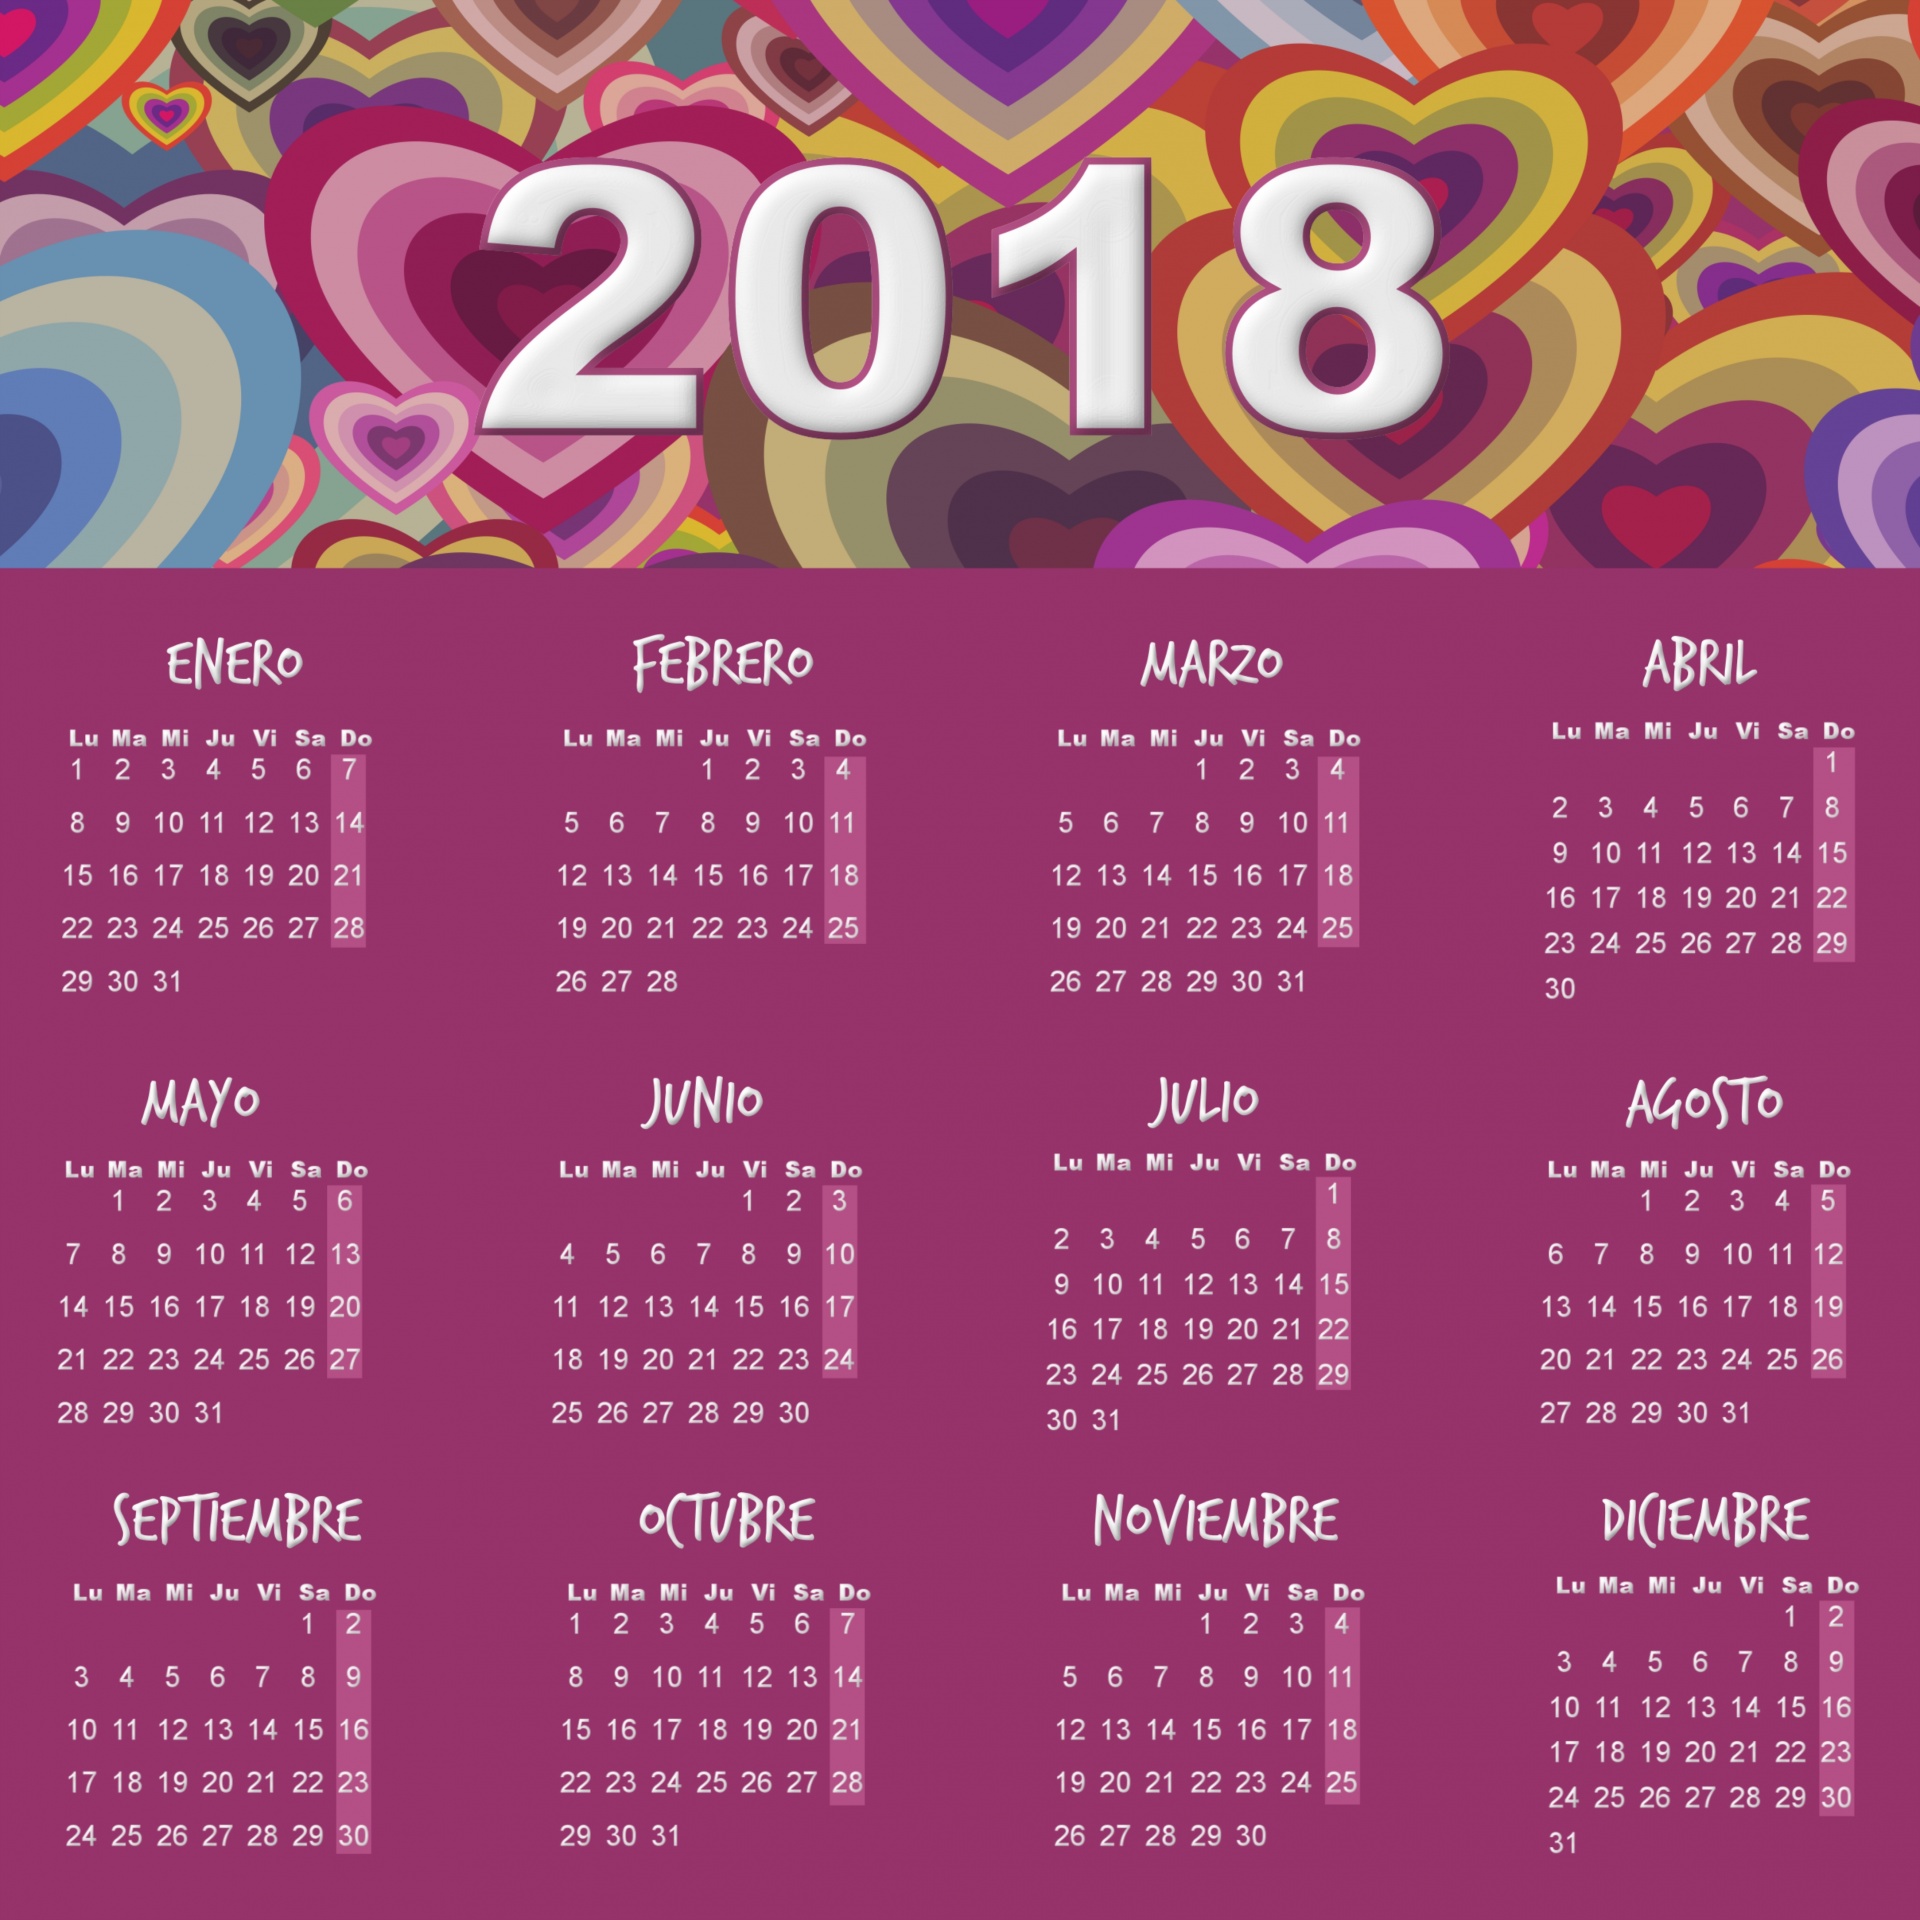 La imagen muestra un calendario del año 2028, en el que febrero tiene 29 días